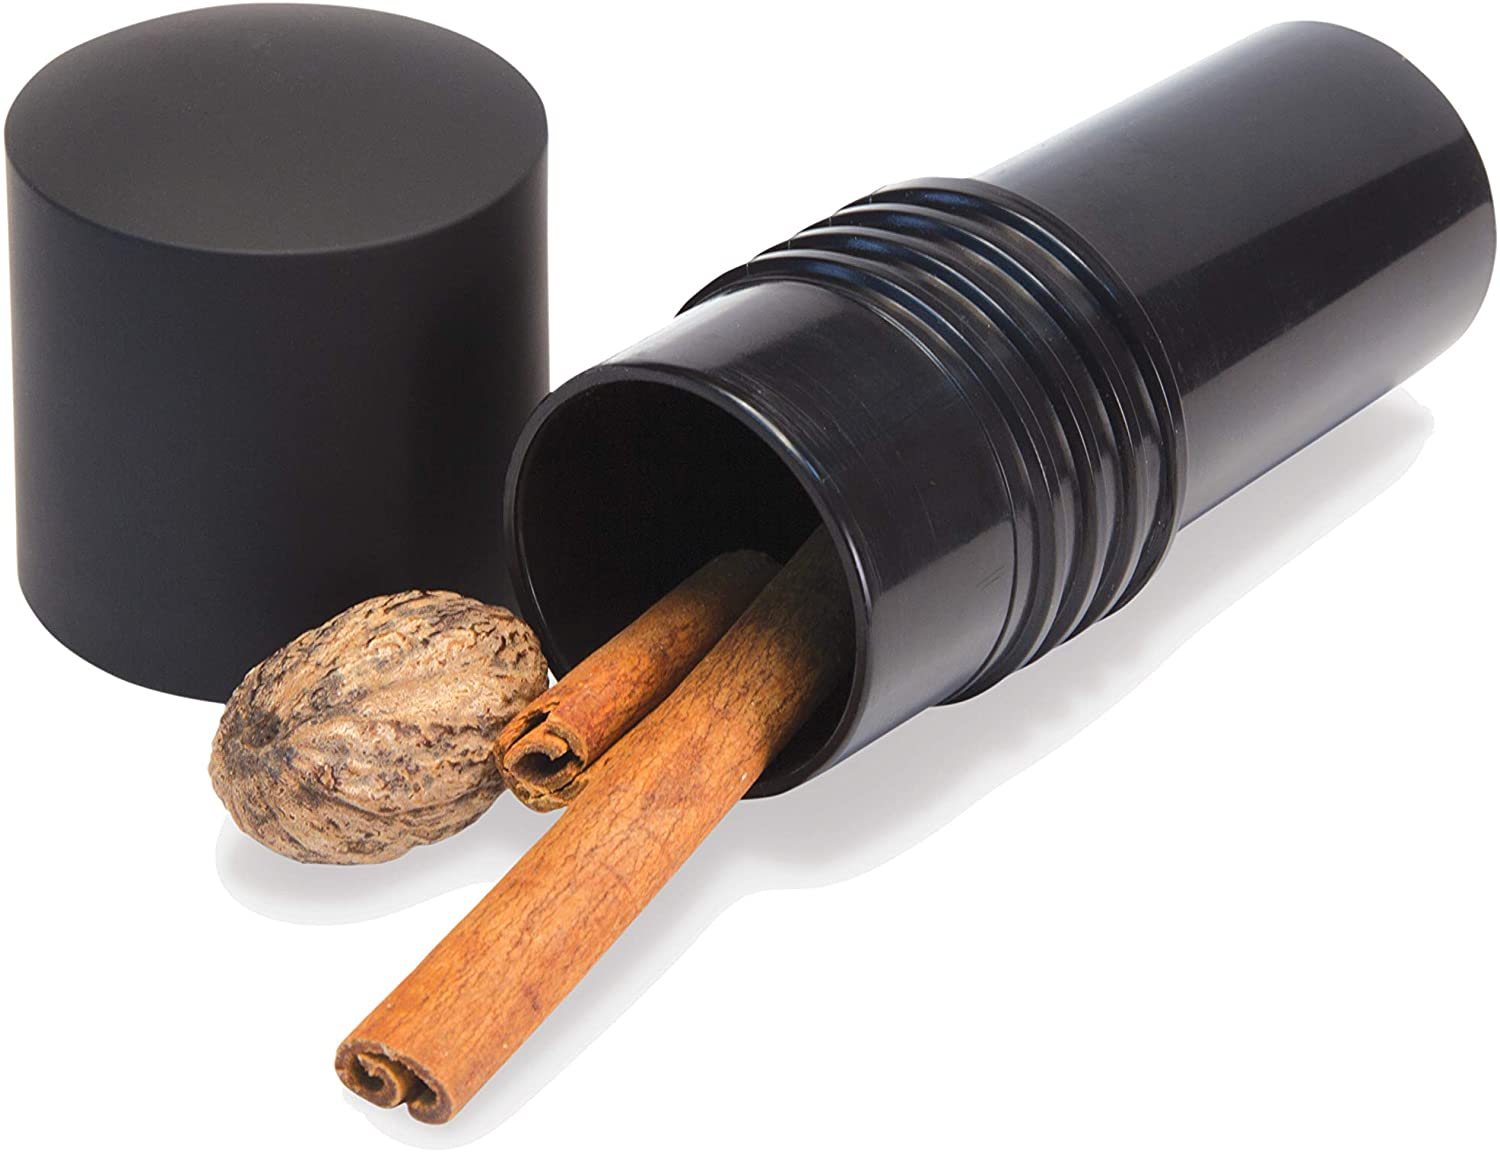 spice grinder with storage